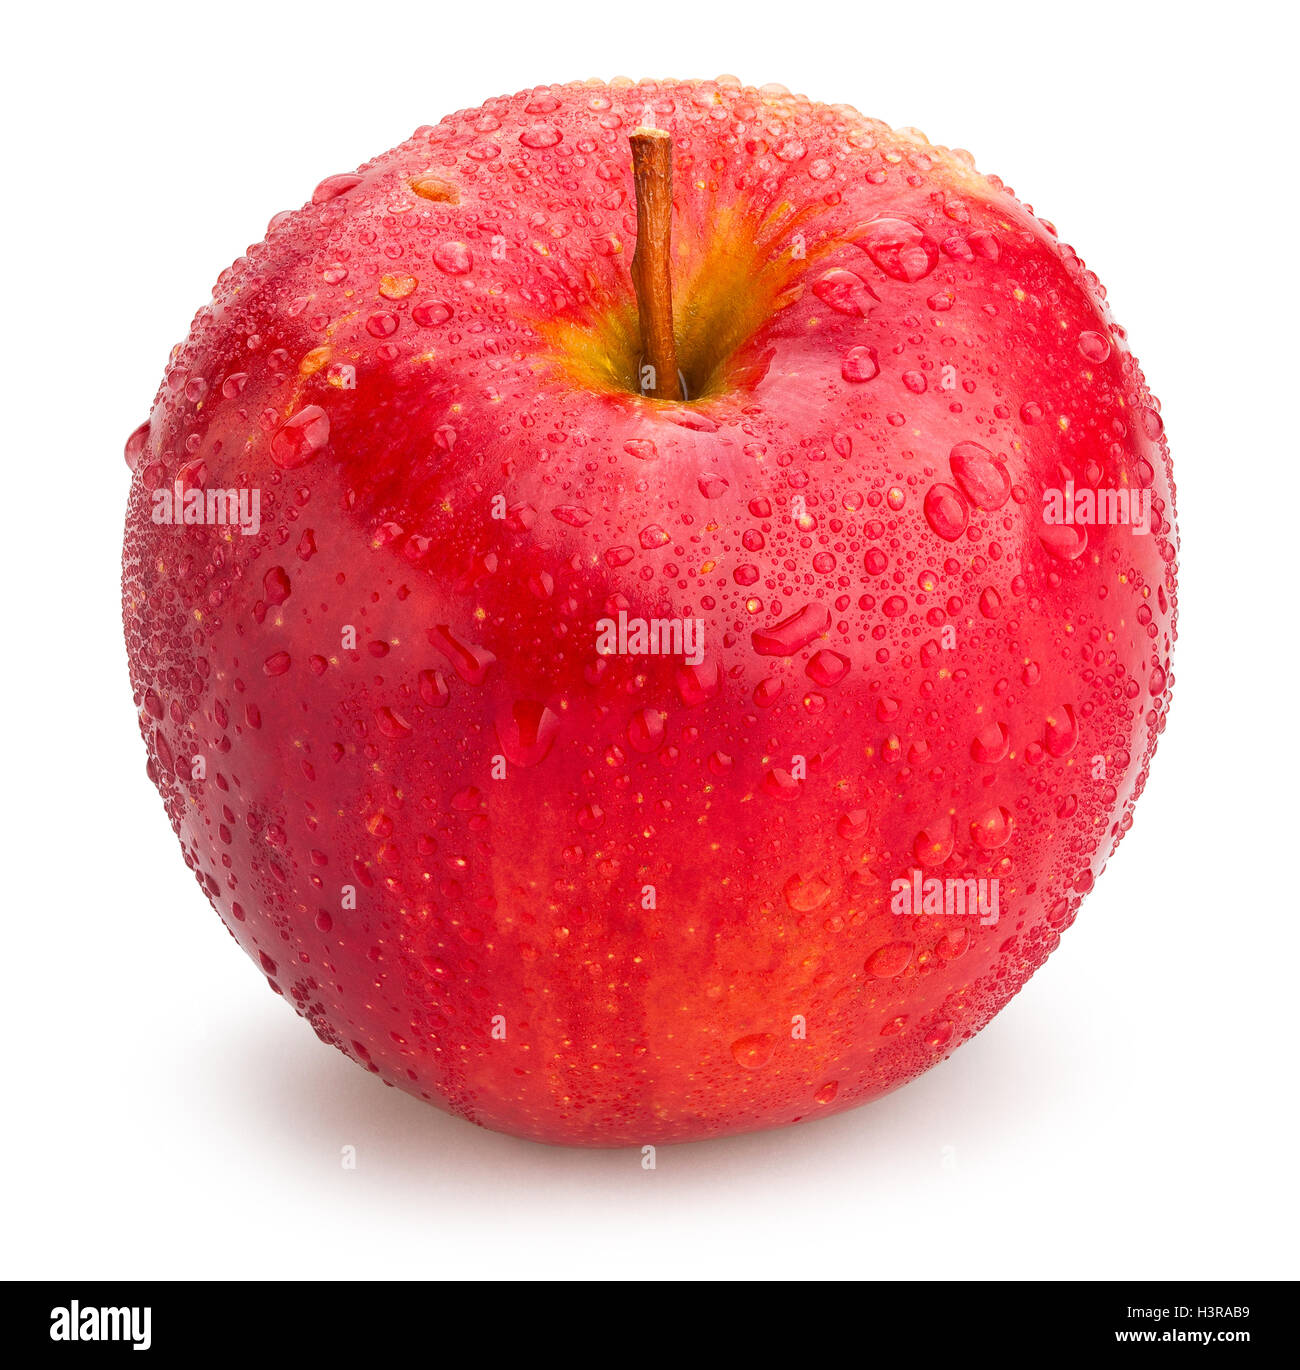 Unico apple isolato Foto Stock